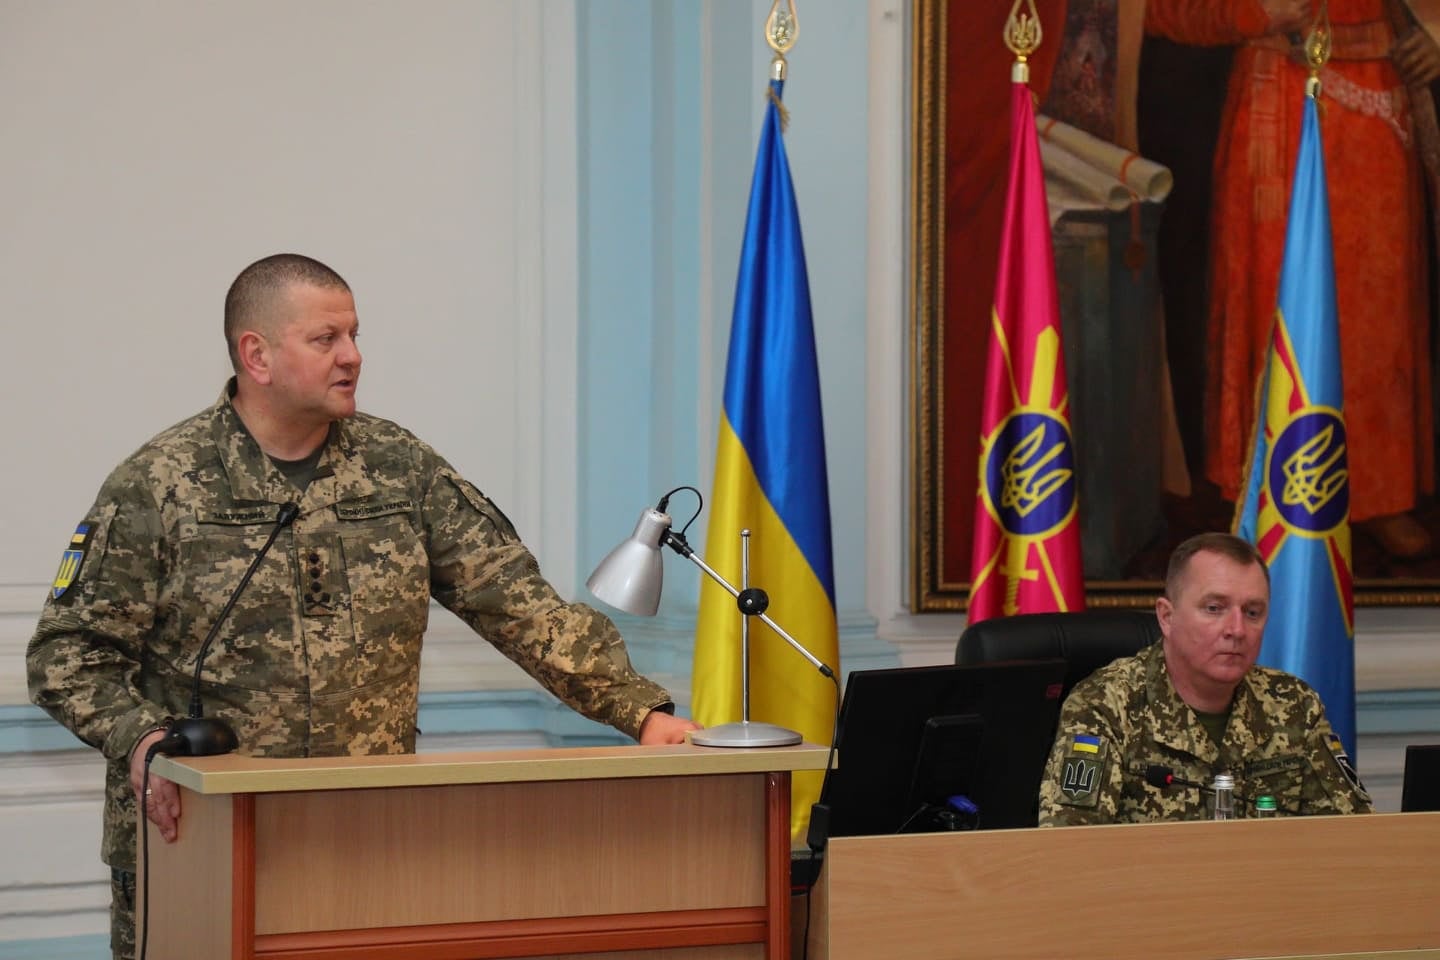 Сьогодні відбулося засідання Ставки Верховного Головнокомандувача Збройних Сил України.